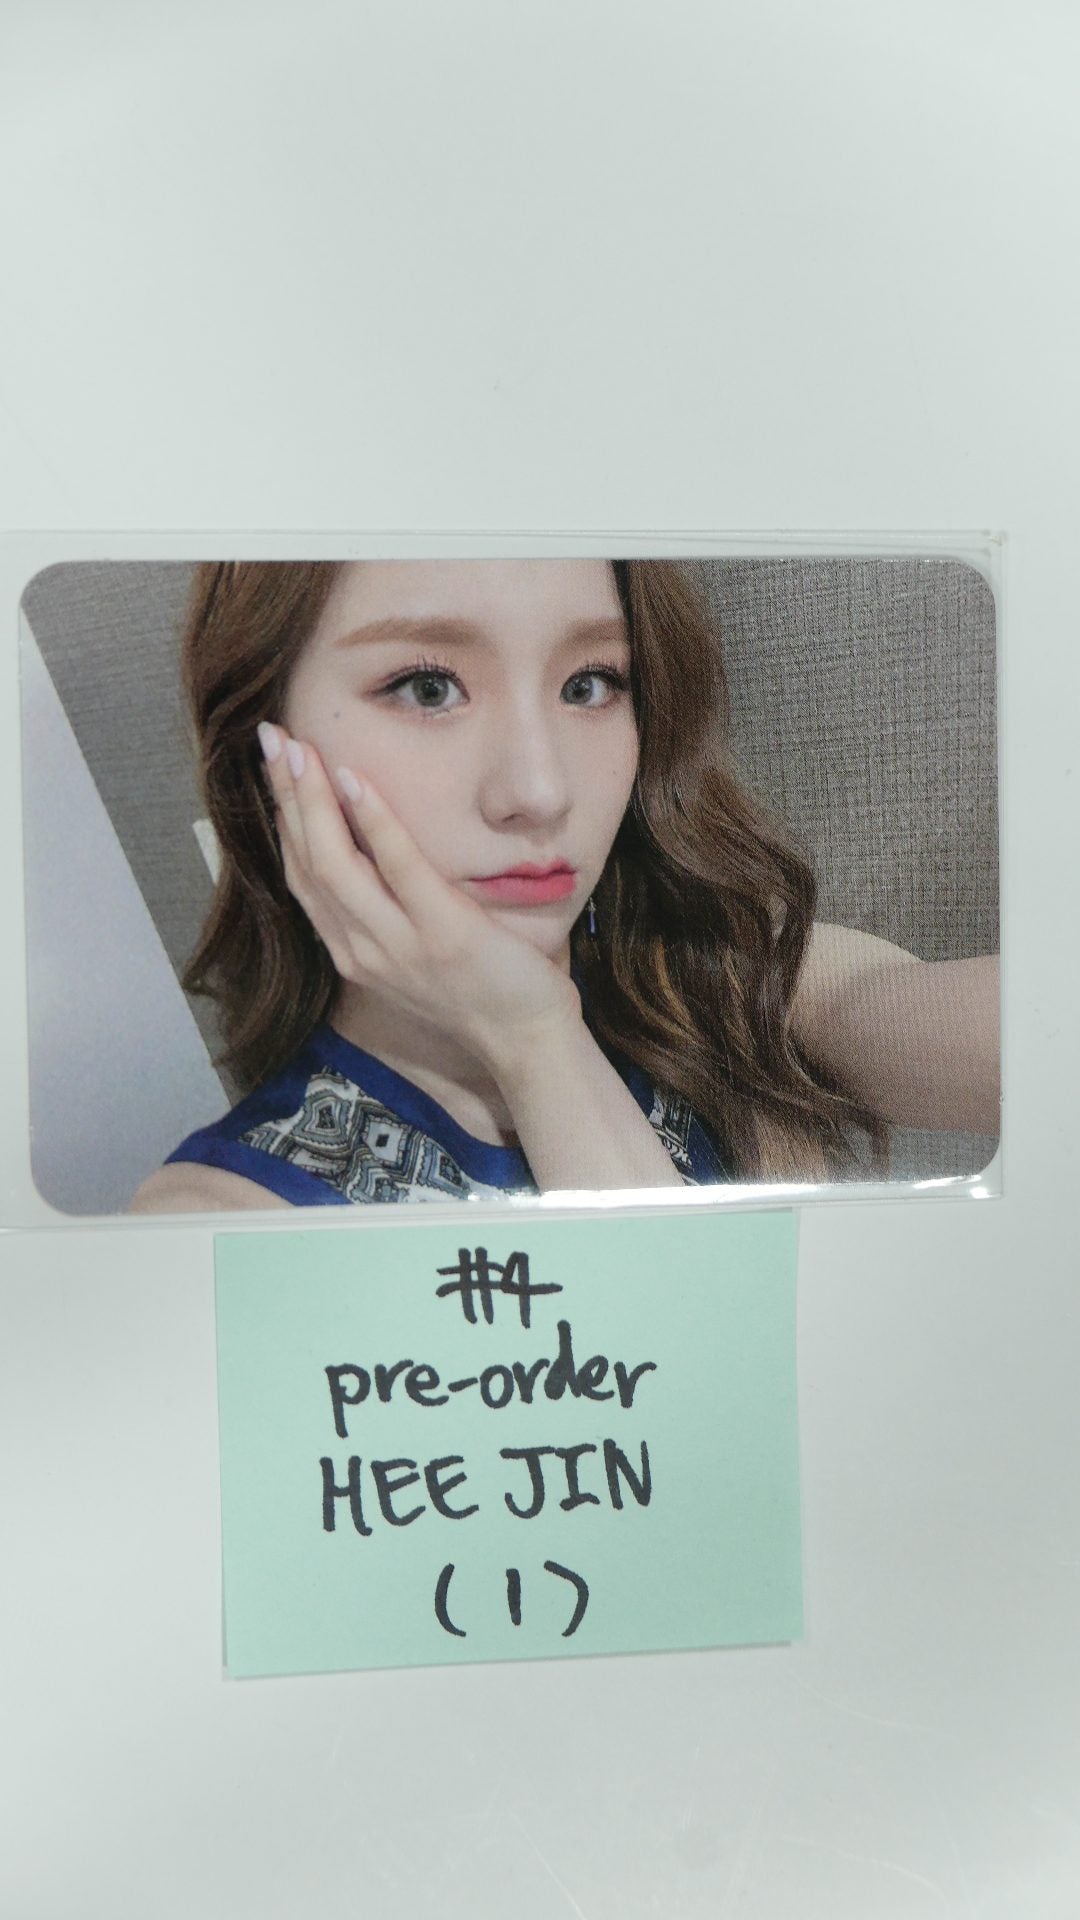 Loona 12:00 - Pre-order (MMT, WithD, Etc) benefit photocard - Heejin